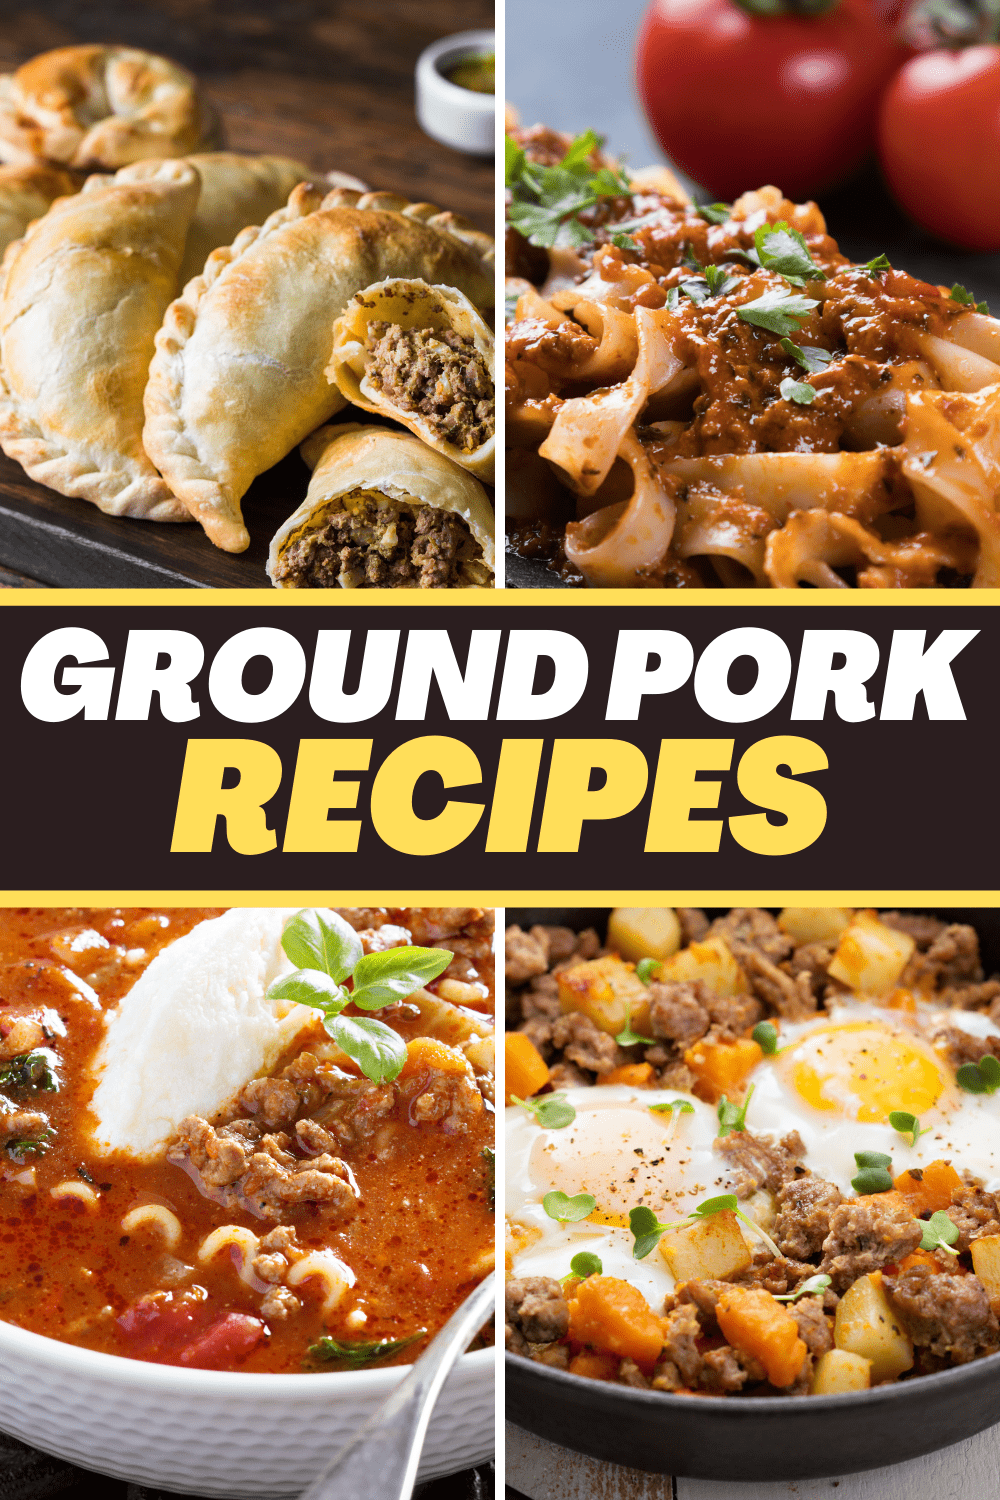 26 Easy Ground Pork Recipes for Dinner - Insanely Good